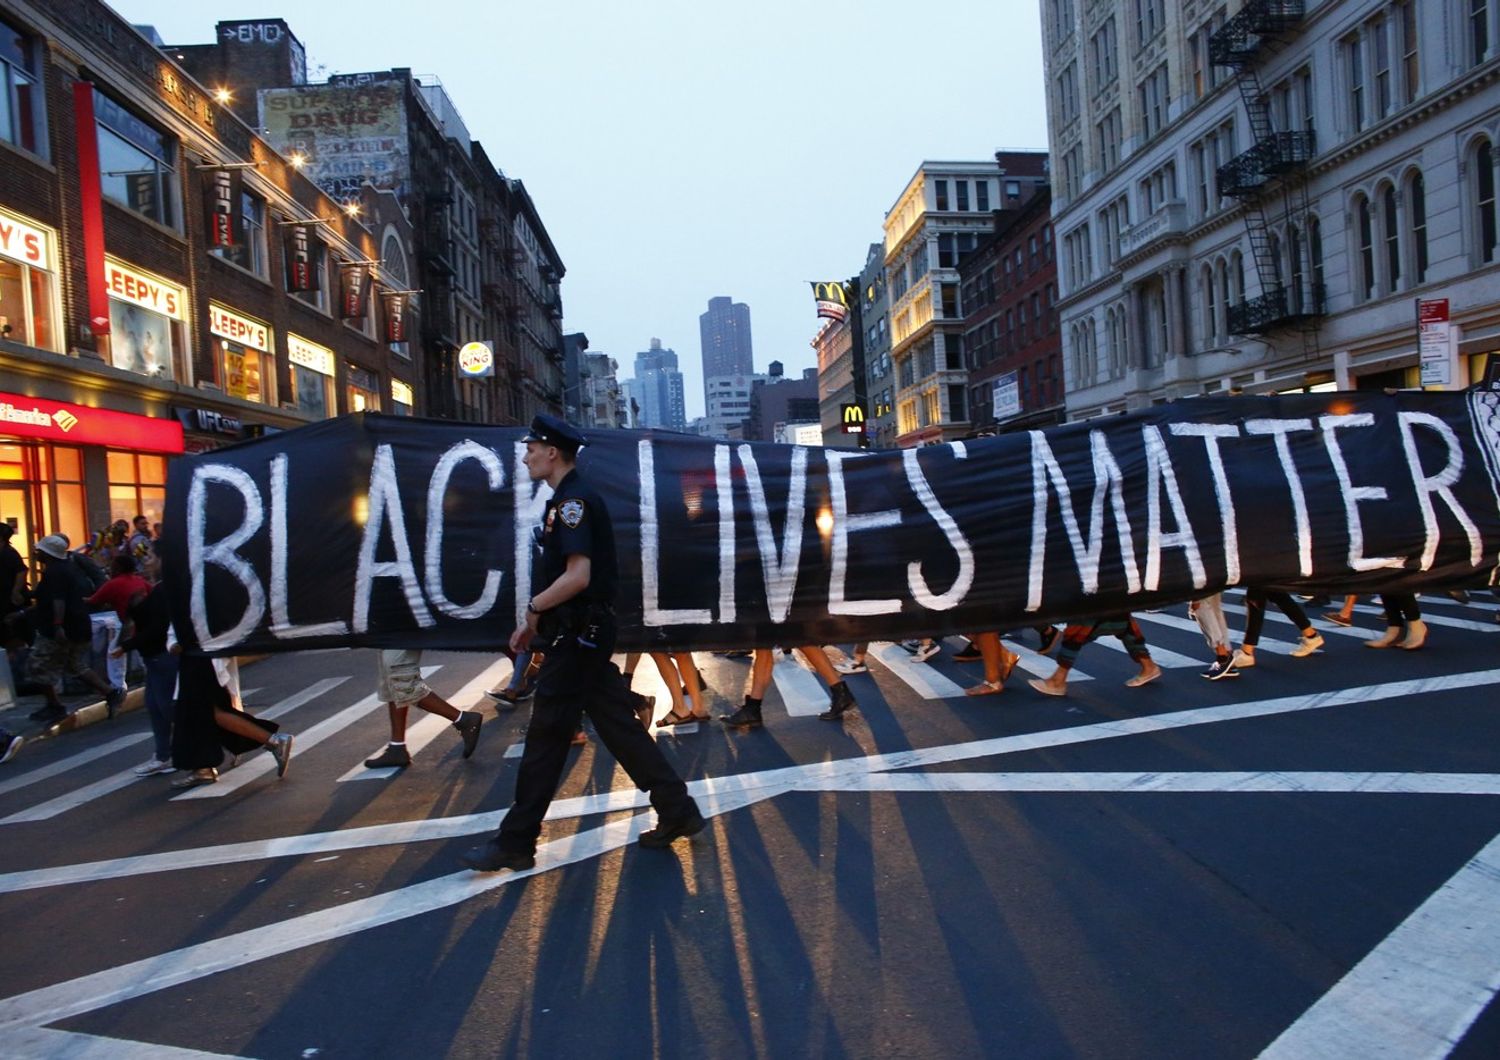 Black Lives Matter, Usa (apf)&nbsp;